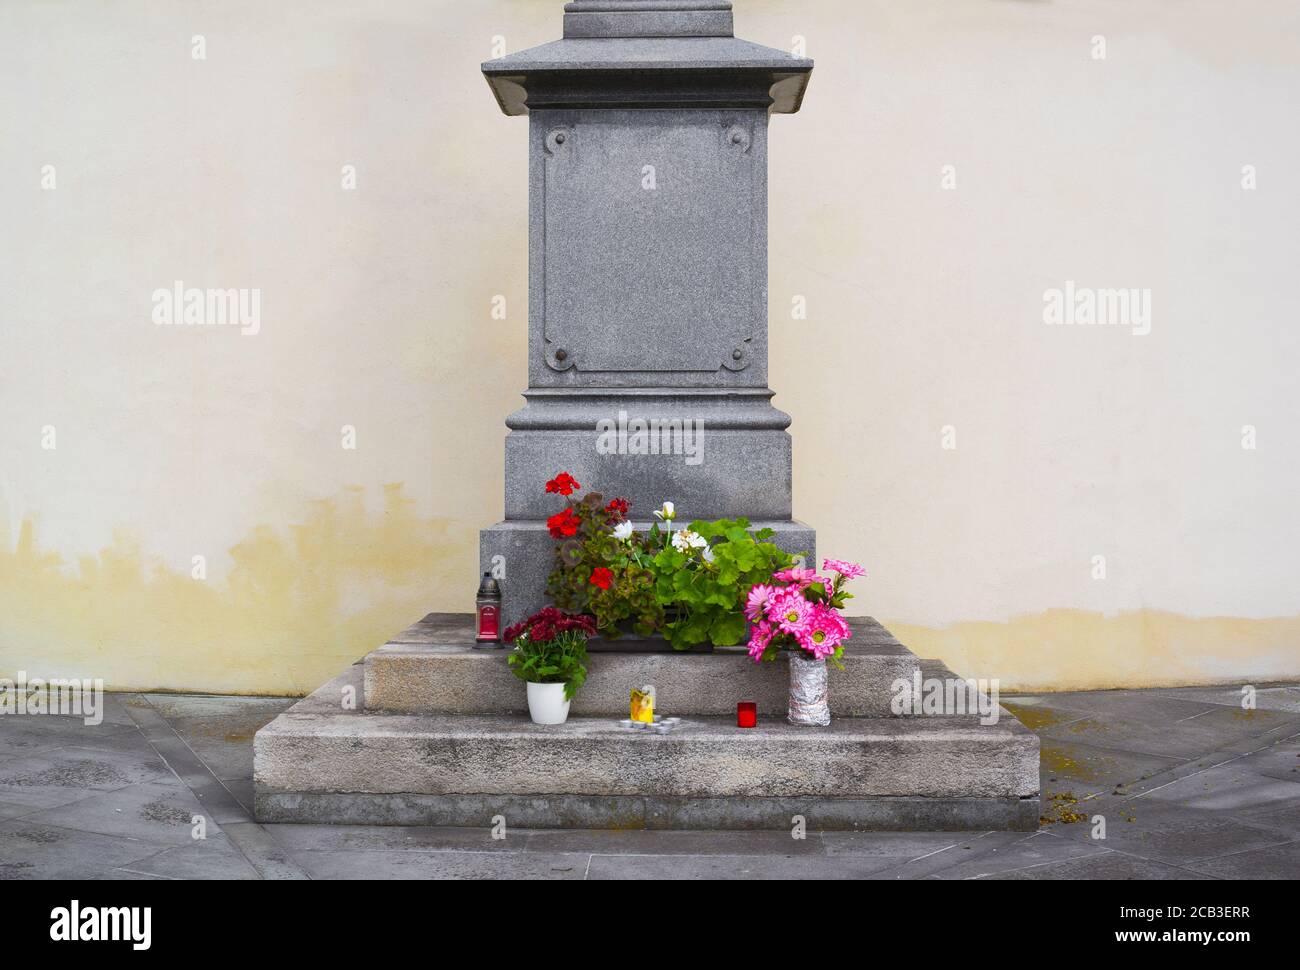 Detail des Sockels. Kerzen, Blumen, Blumenstrauß als Ausdruck von Gedenken, Verherrlichung oder Ehre. Leere Wand im Hintergrund als Kopierbereich Stockfoto